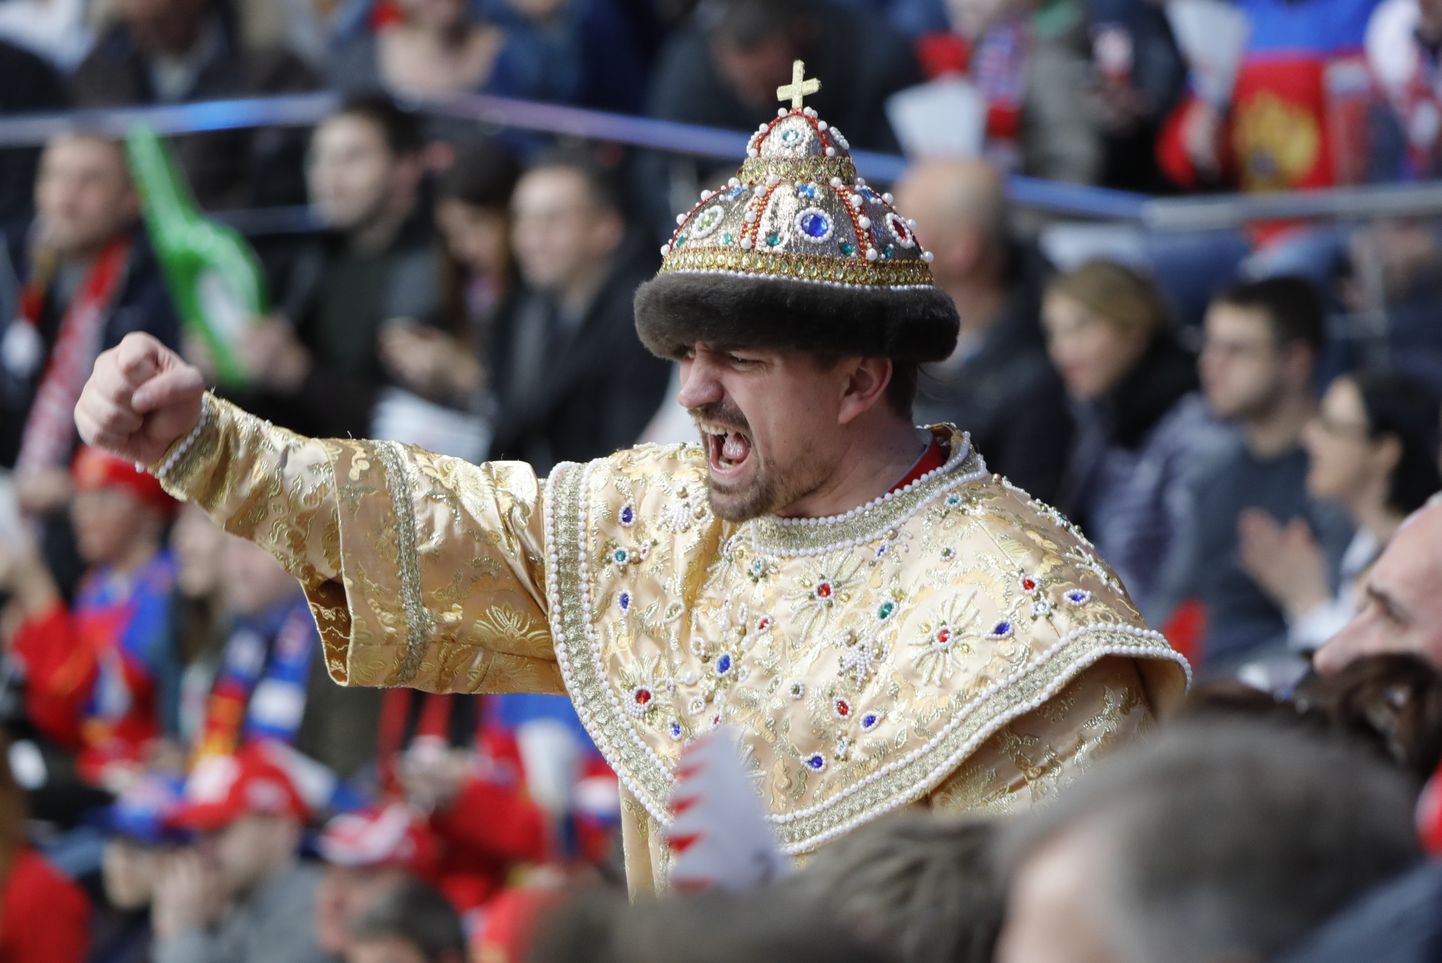 Venemaa tsaari Ivan Julma filmikostüümi riietunud fänn hokivõistlusele kaasa elamas.